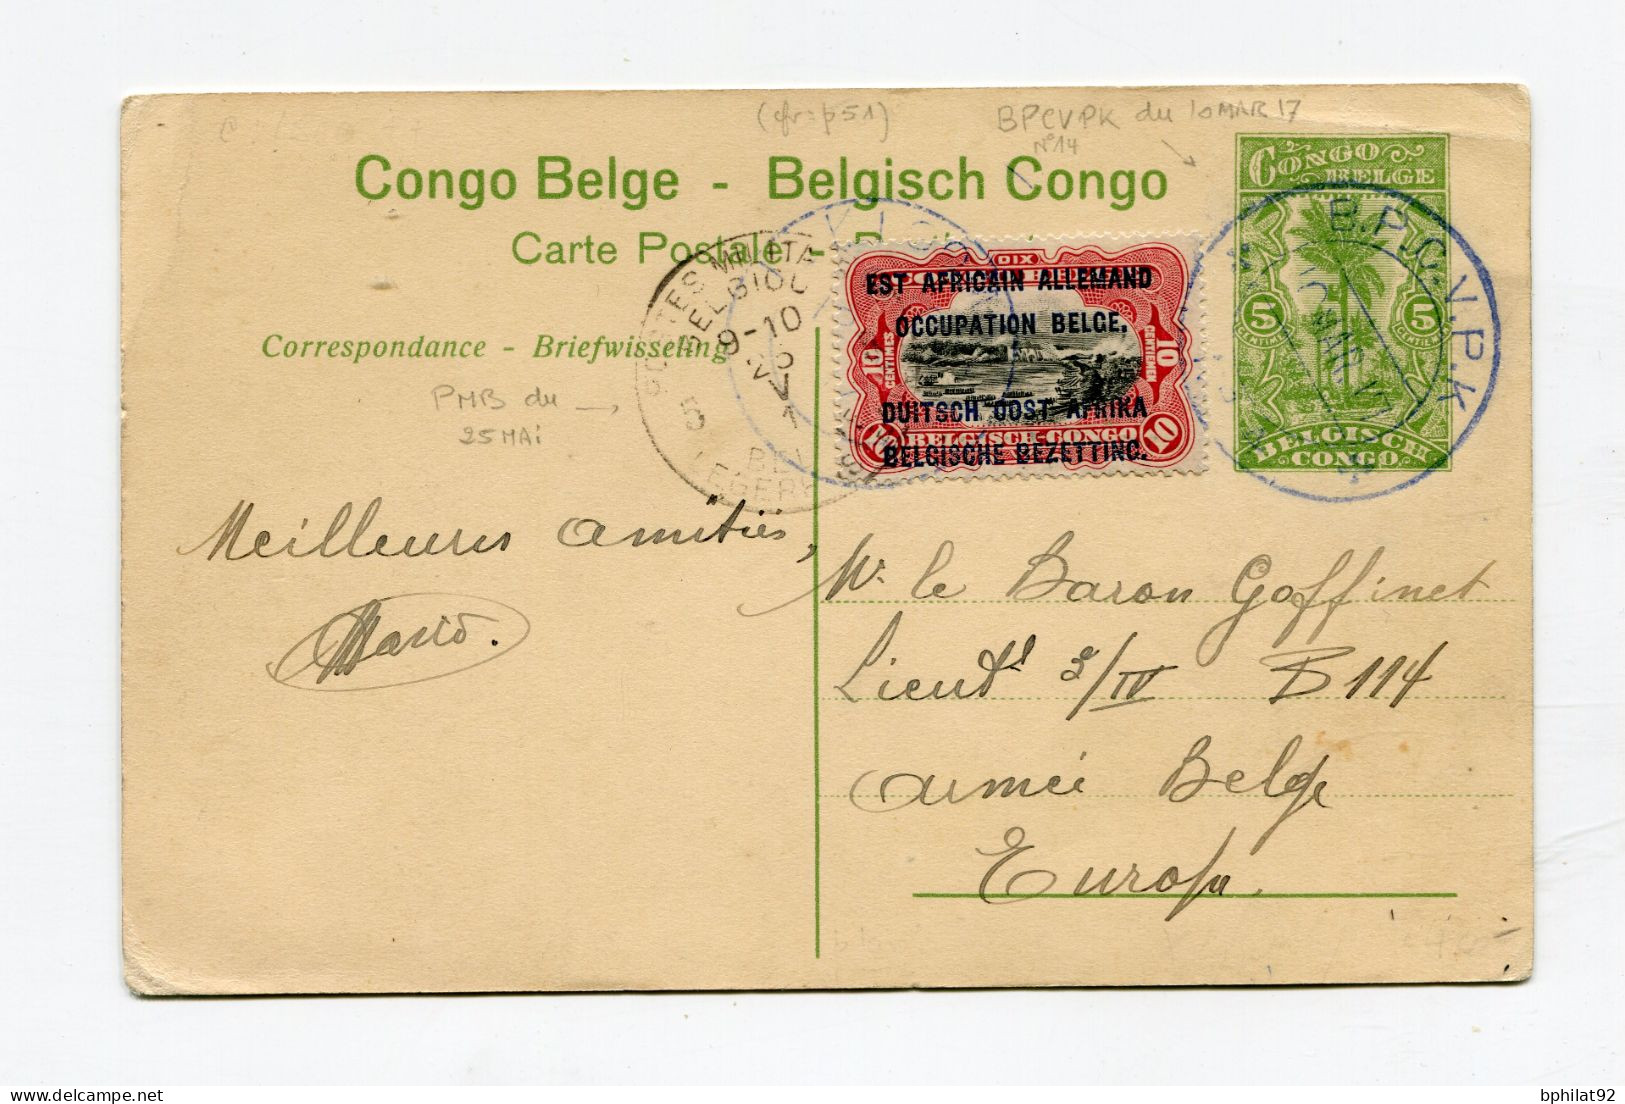 !!! ENTIER POSTAL DU CONGO BELGE, CACHET BPCVPK DE 1917 - Lettres & Documents